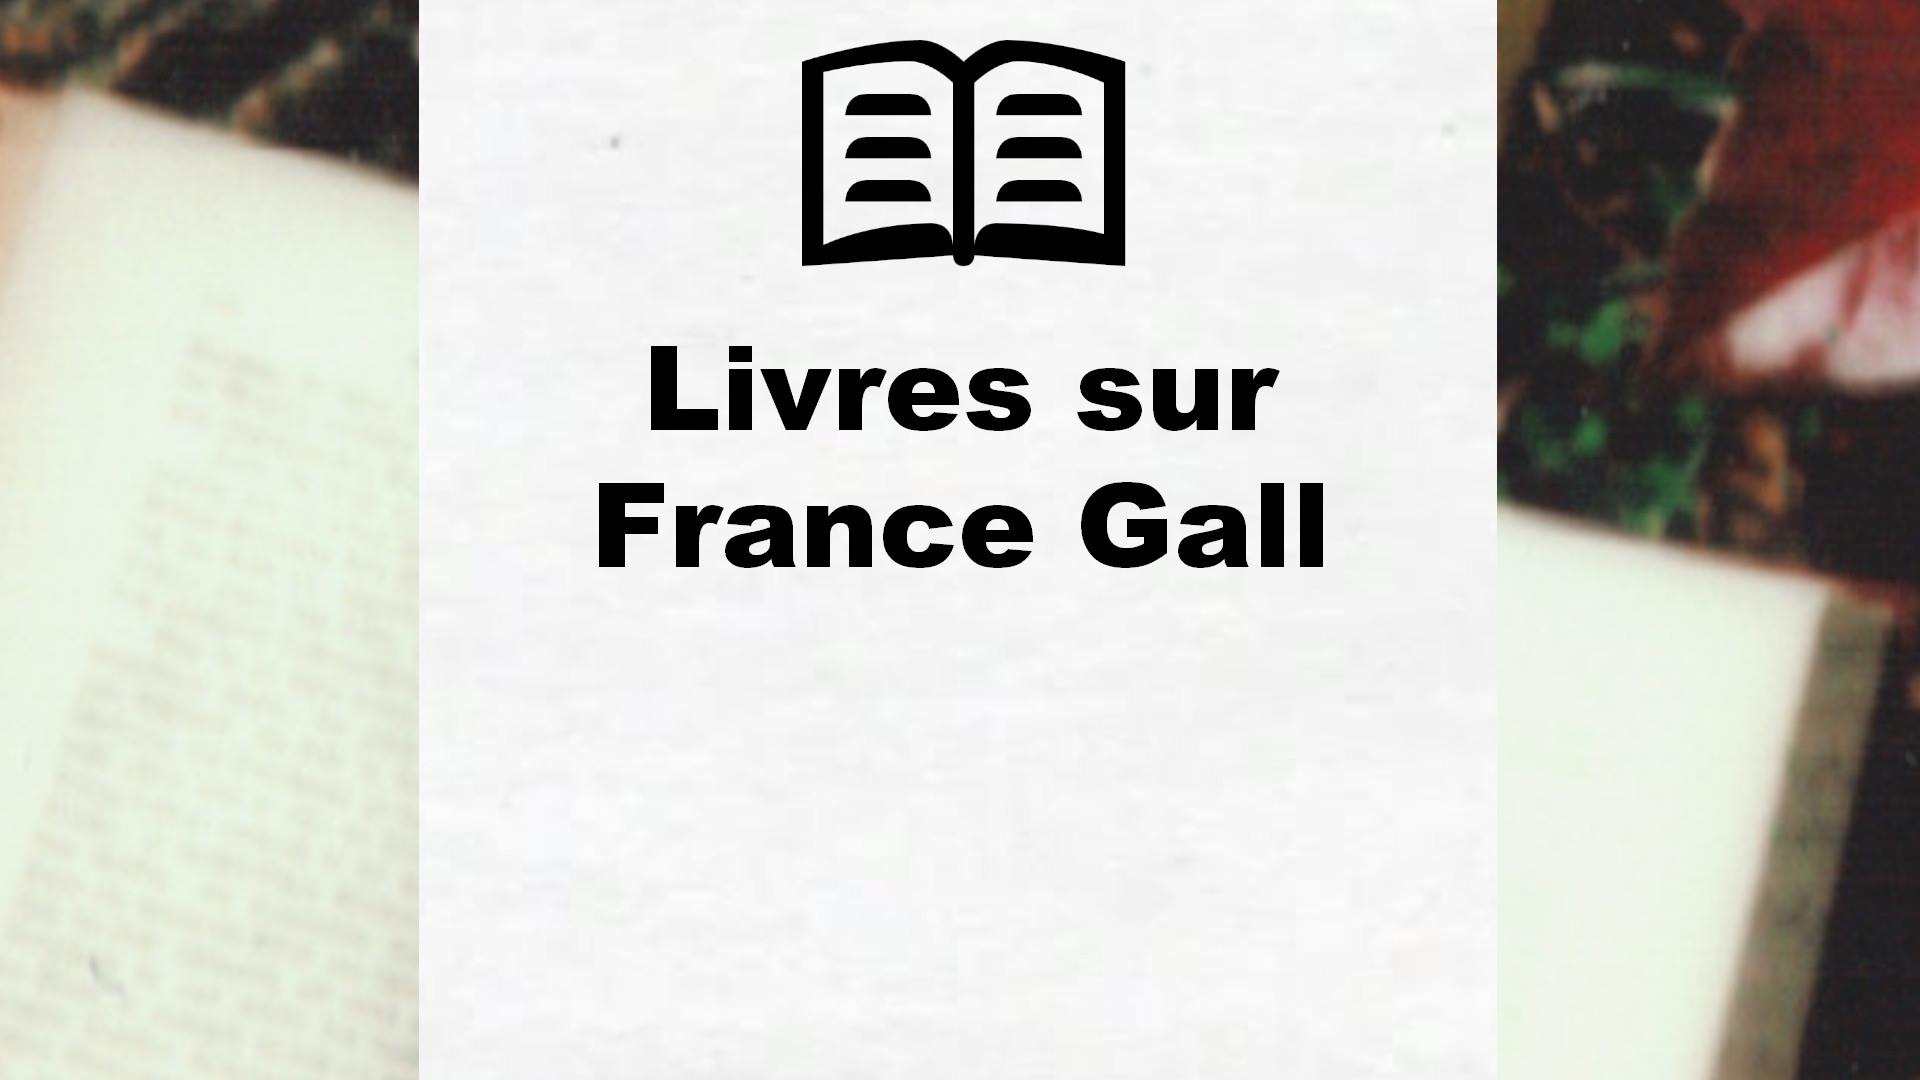 Livres sur France Gall